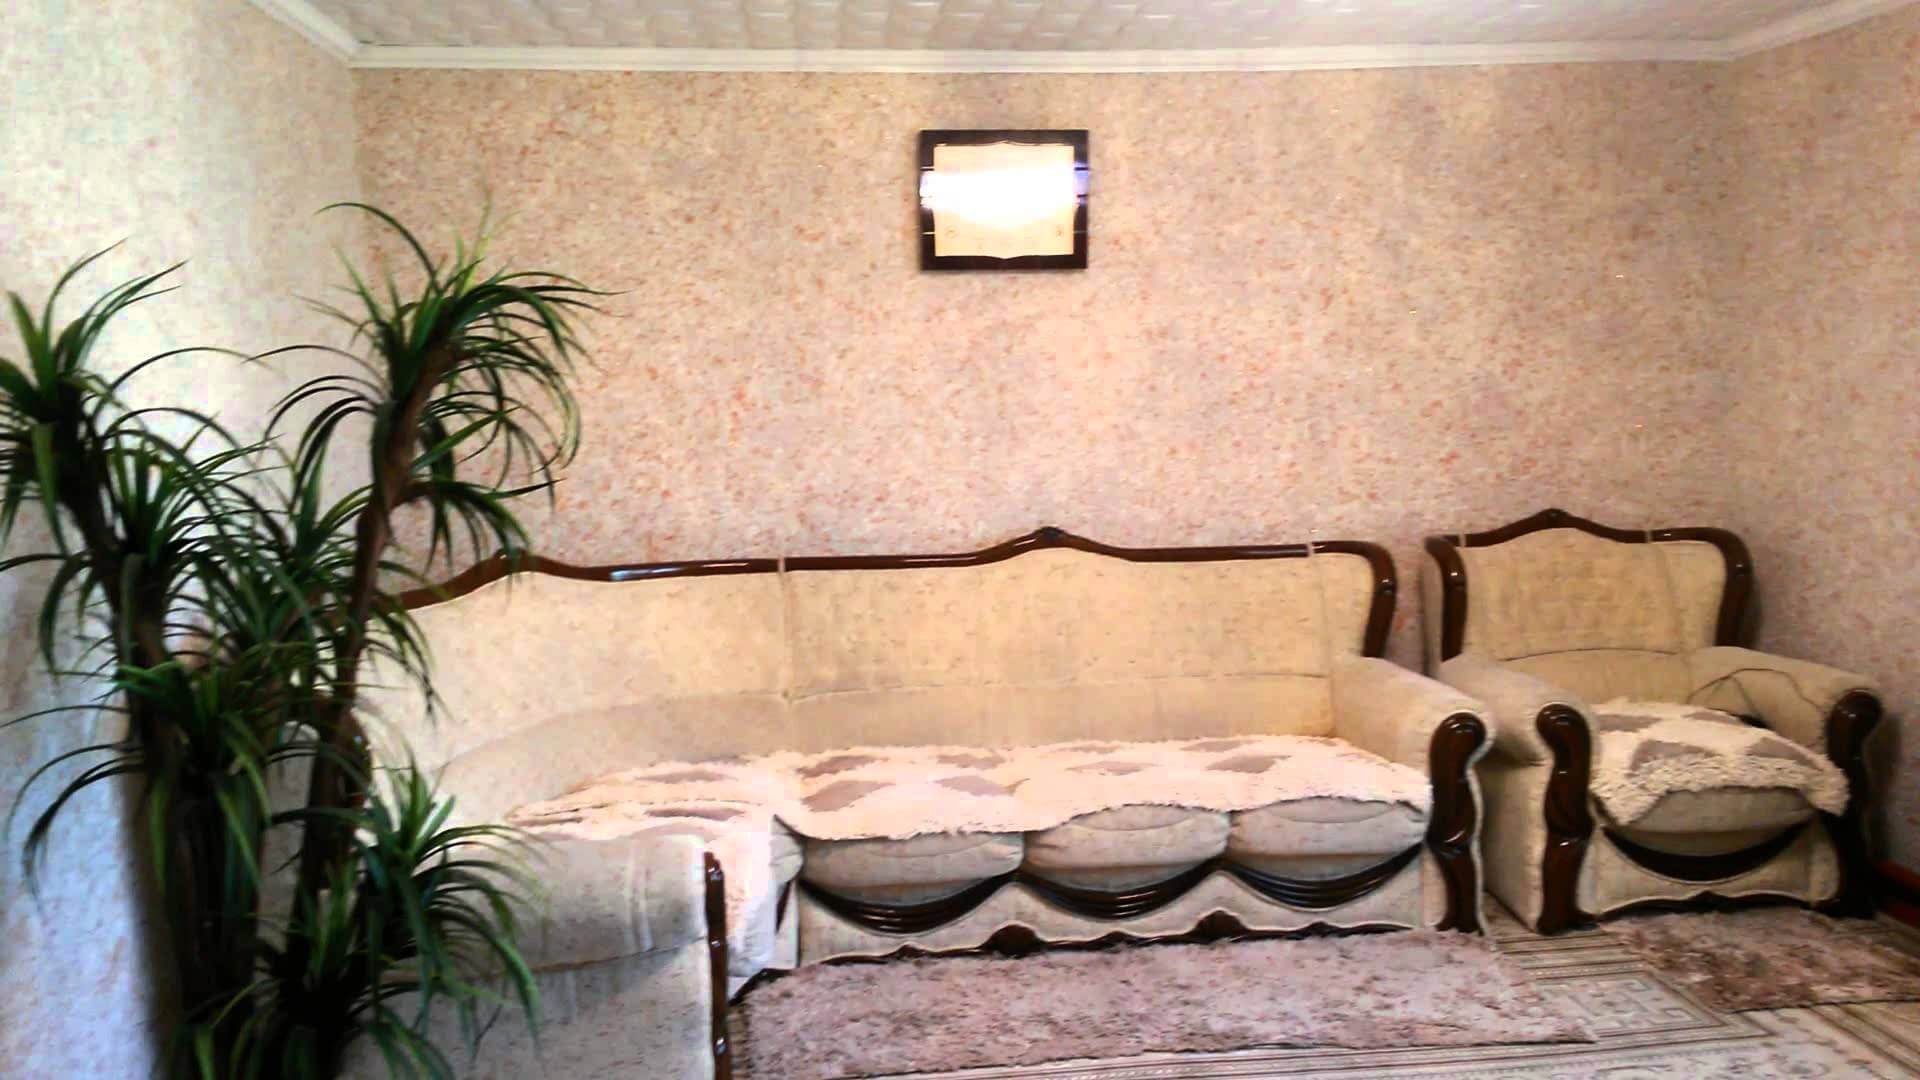 Фото жидких обоев на стенах в спальне фото